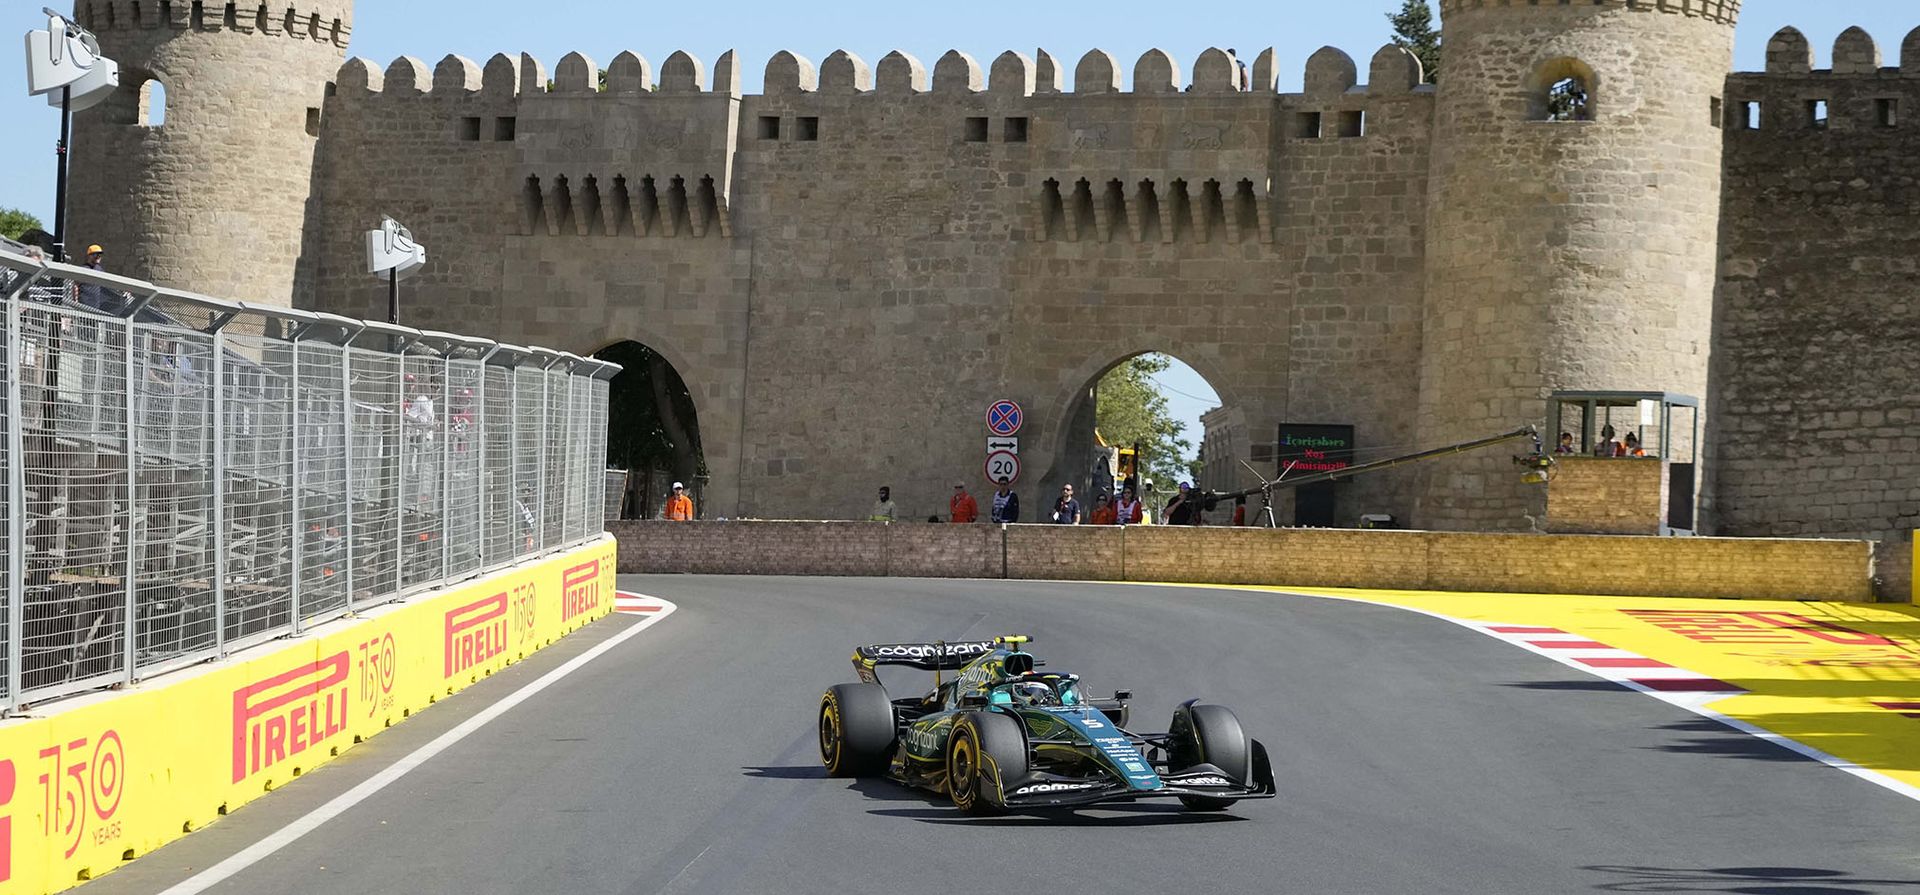 El piloto alemán de Aston Martin, Sebastian Vettel, conduce su automóvil durante la primera práctica libre en el circuito de Bakú, Azerbaiyán. El Gran Premio de Fórmula Uno se llevará a cabo el domingo.